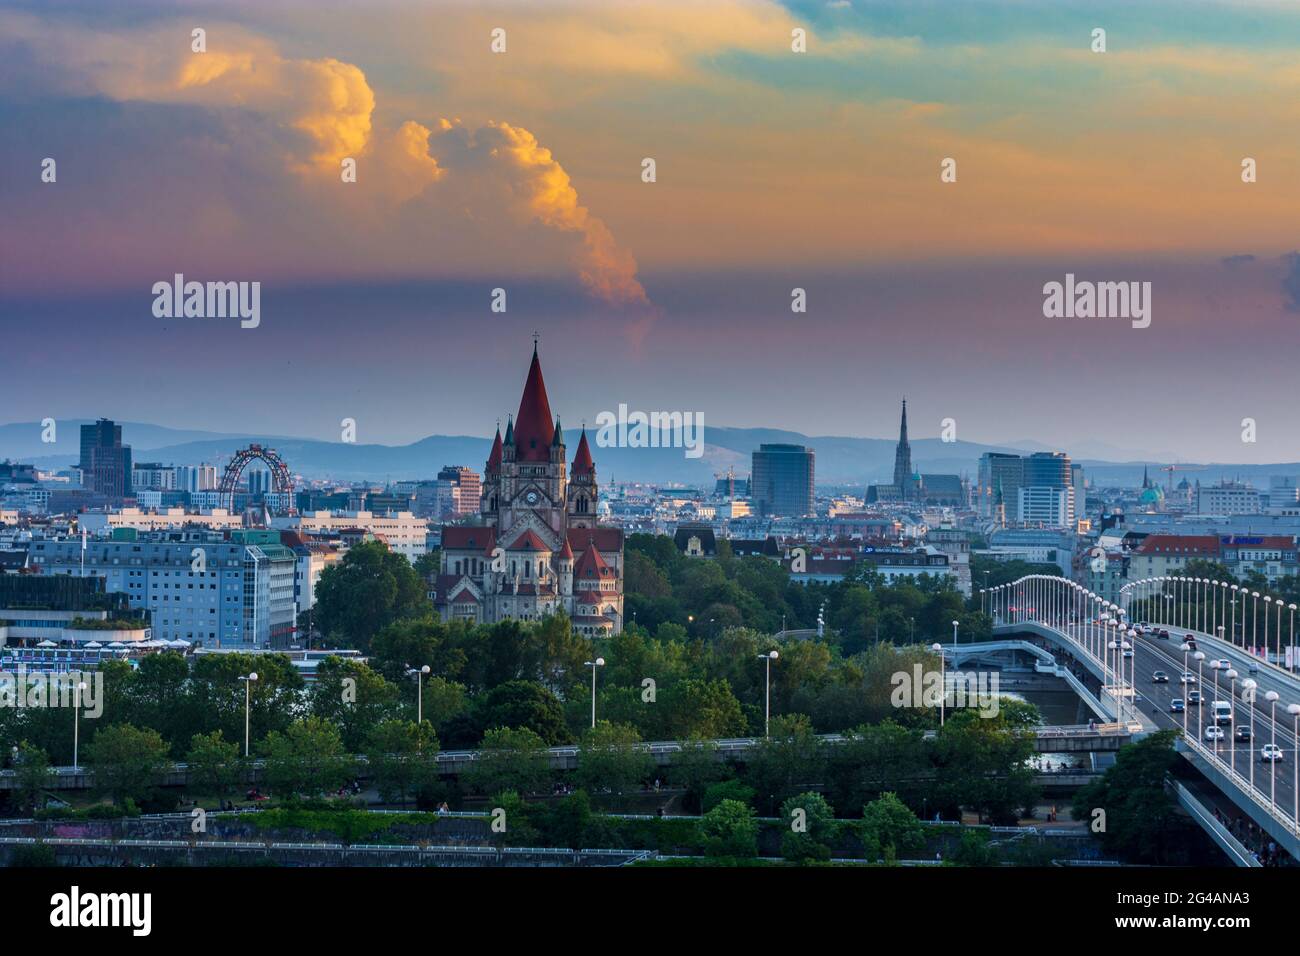 Wien, Vienna: Vienna city center, river Donau (Danube), bridge Reichsbrücke, church Franz von Assisi, cathedral Stephansdom (St. Stephen's Cathedral), Stock Photo